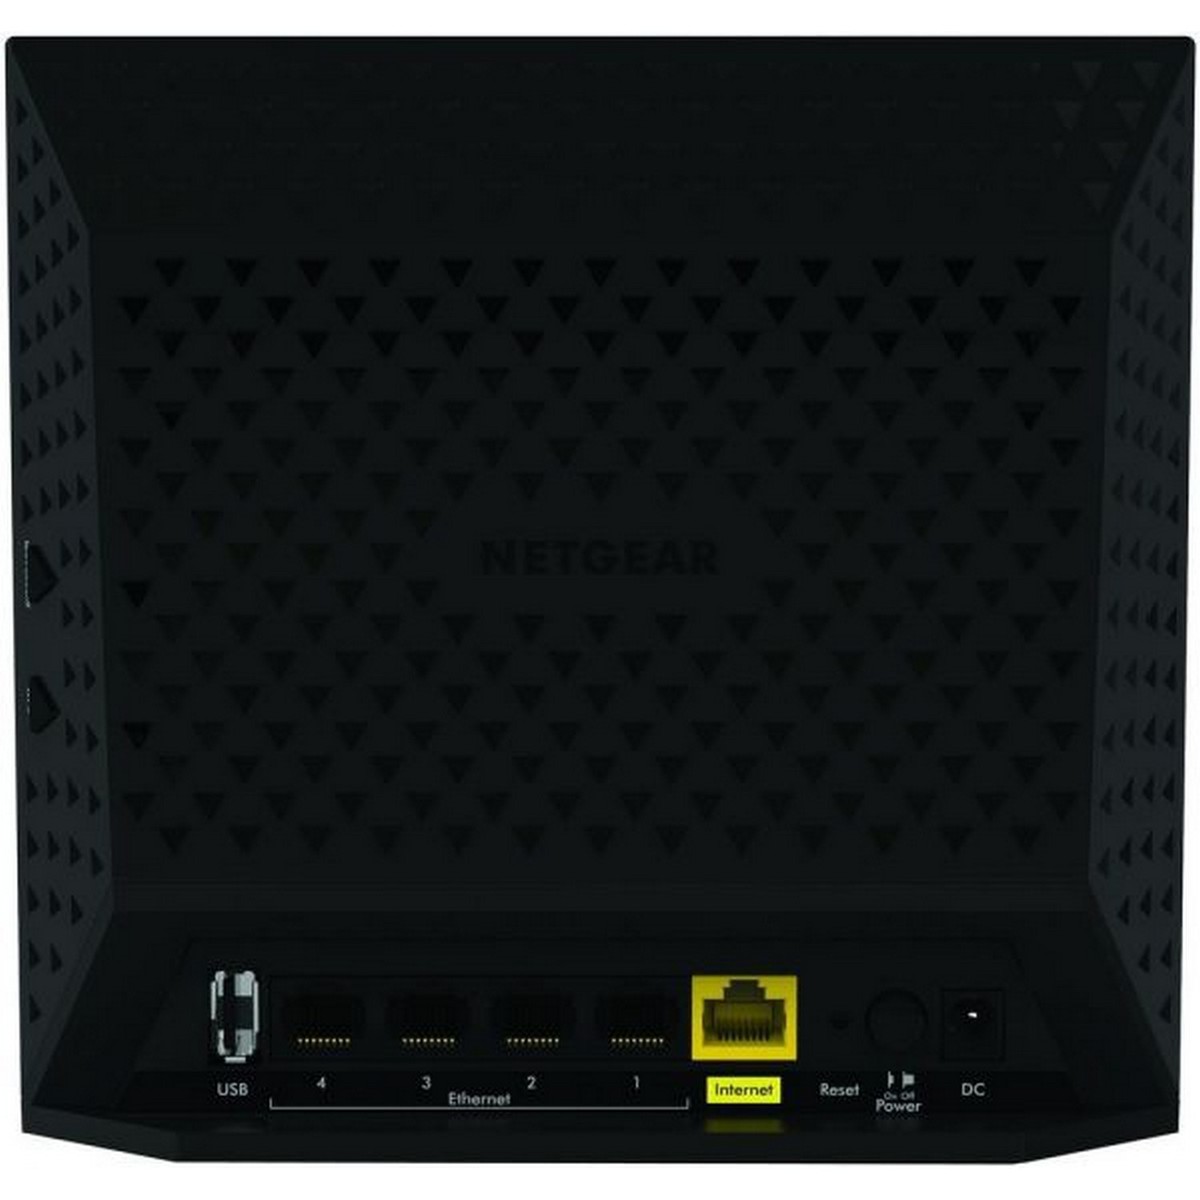 Netgear AC1200 Dual Band Router R6100